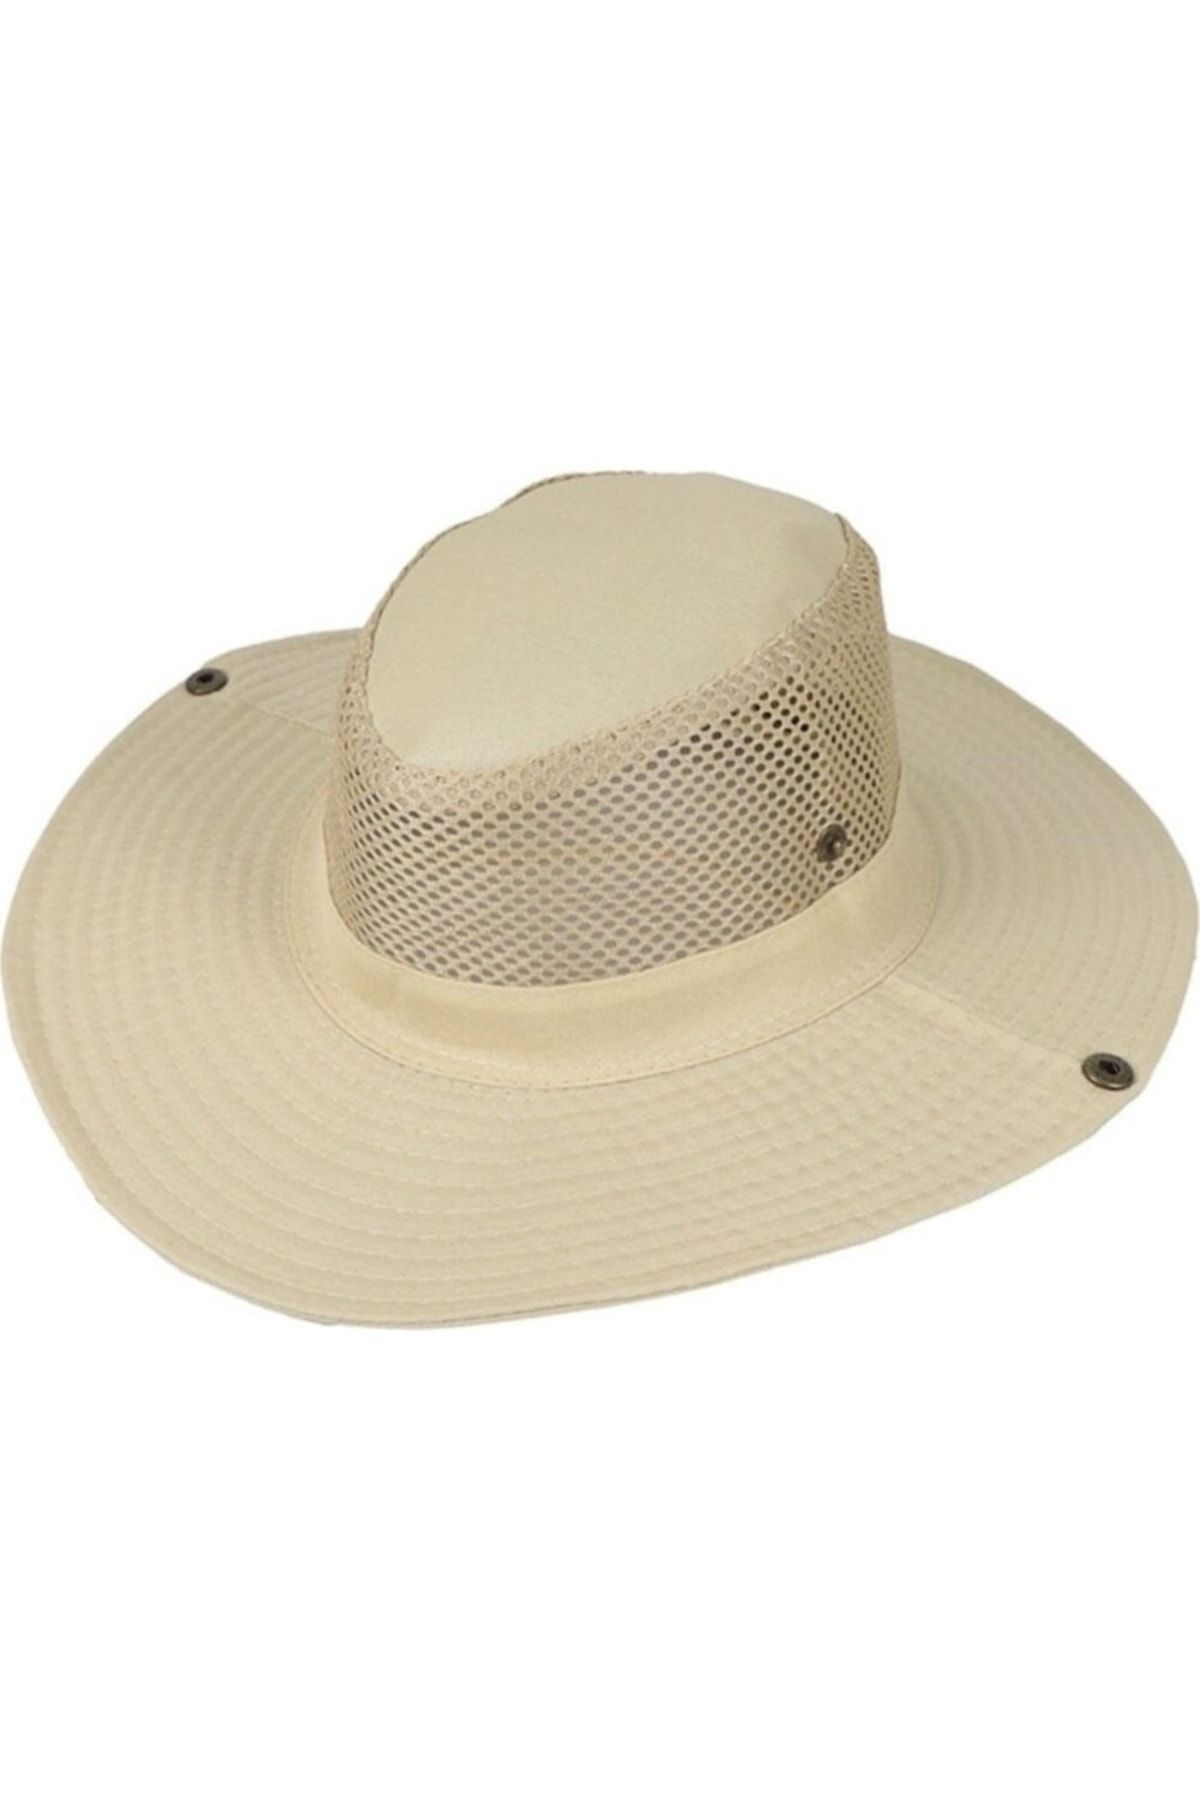 Neler Geldi Neler Krem Erkek Katlanabilir Yazlık Fileli Fötr Şapka Foter Şapka Yazlık Fötür Şapka